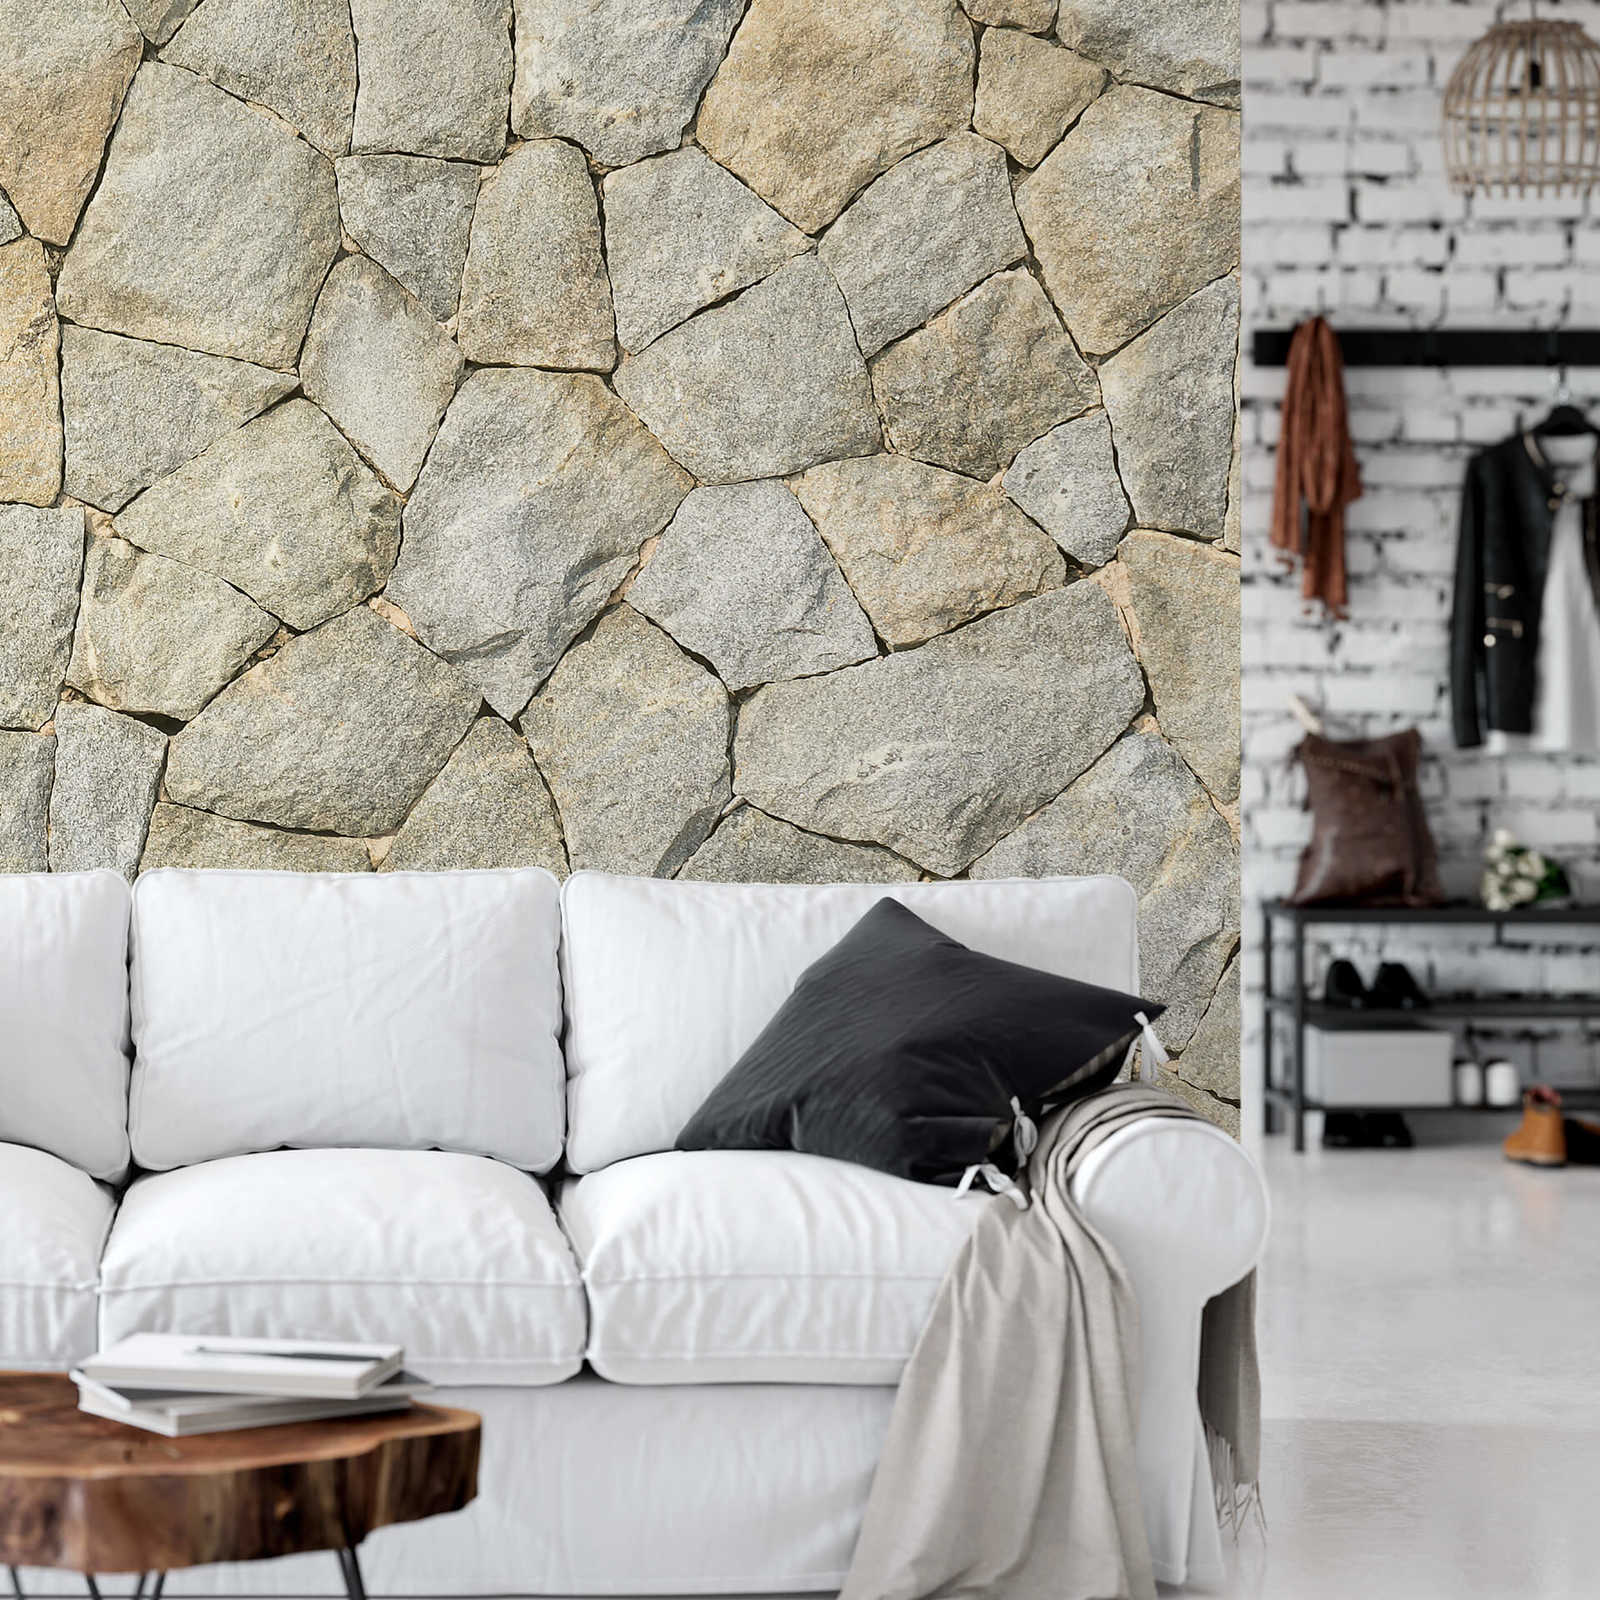             Photo wallpaper 3D natural stone look wall - grey
        